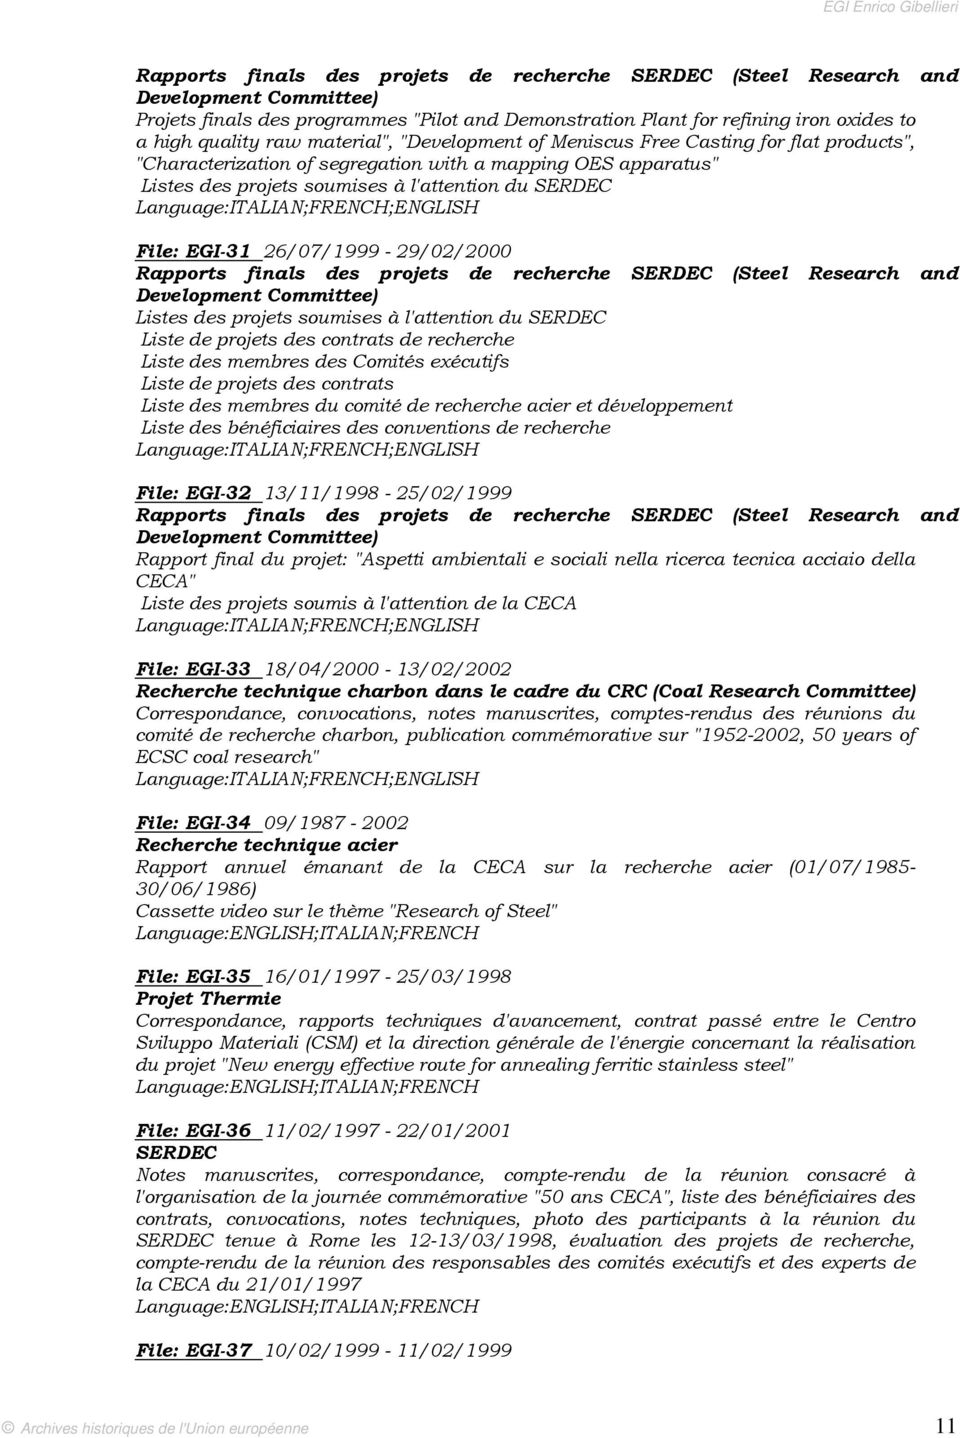 26/07/1999-29/02/2000 Rapports finals des projets de recherche SERDEC (Steel Research and Development Committee) Listes des projets soumises à l'attention du SERDEC Liste de projets des contrats de